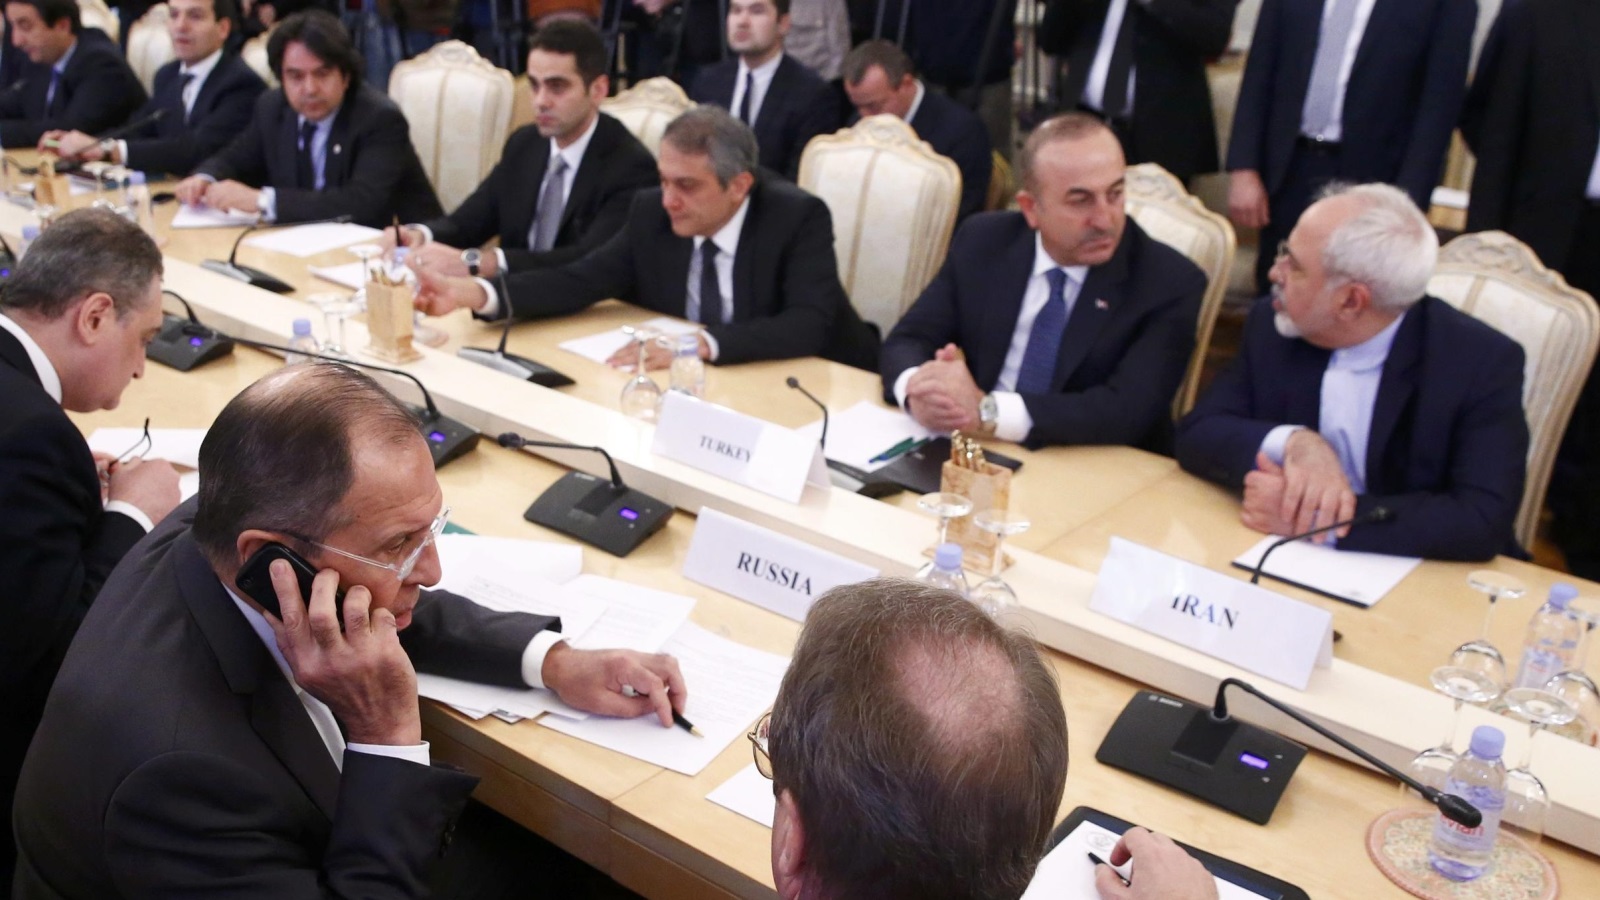 وزراء خارجية روسيا وتركيا وإيران التقوا في موسكو لبحث الأزمة السورية دون أن يخبروا أي أميركي (رويترز)